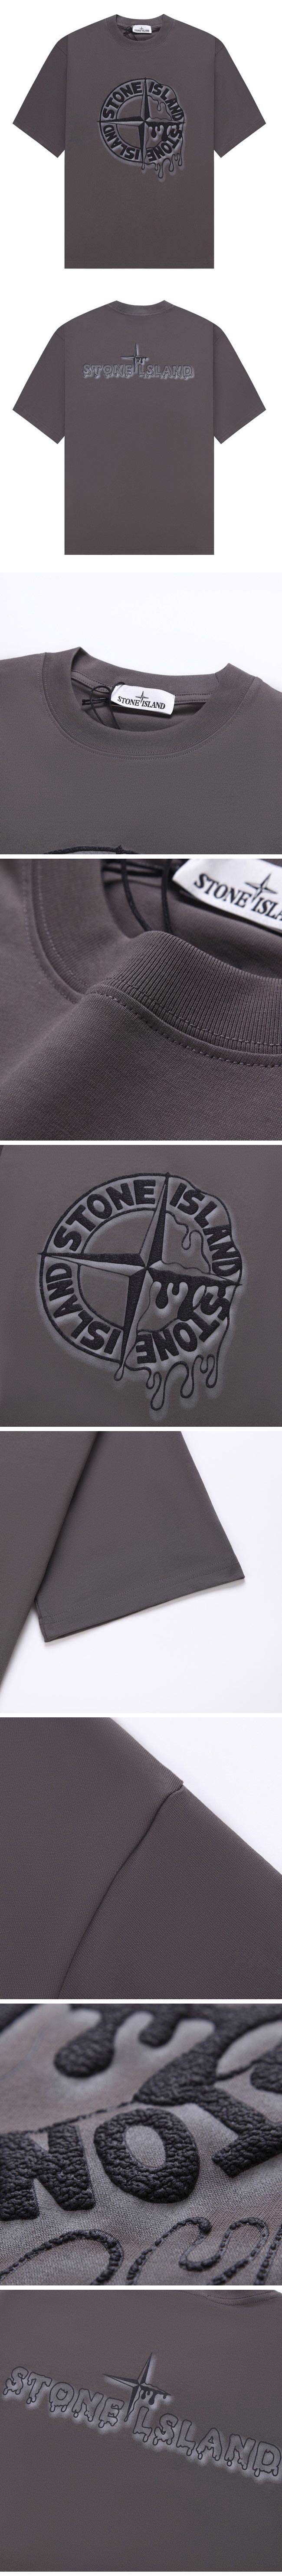 Stone Island Center Print Logo Tee ストーン アイランド センター プリント ロゴ Tシャツ グレー